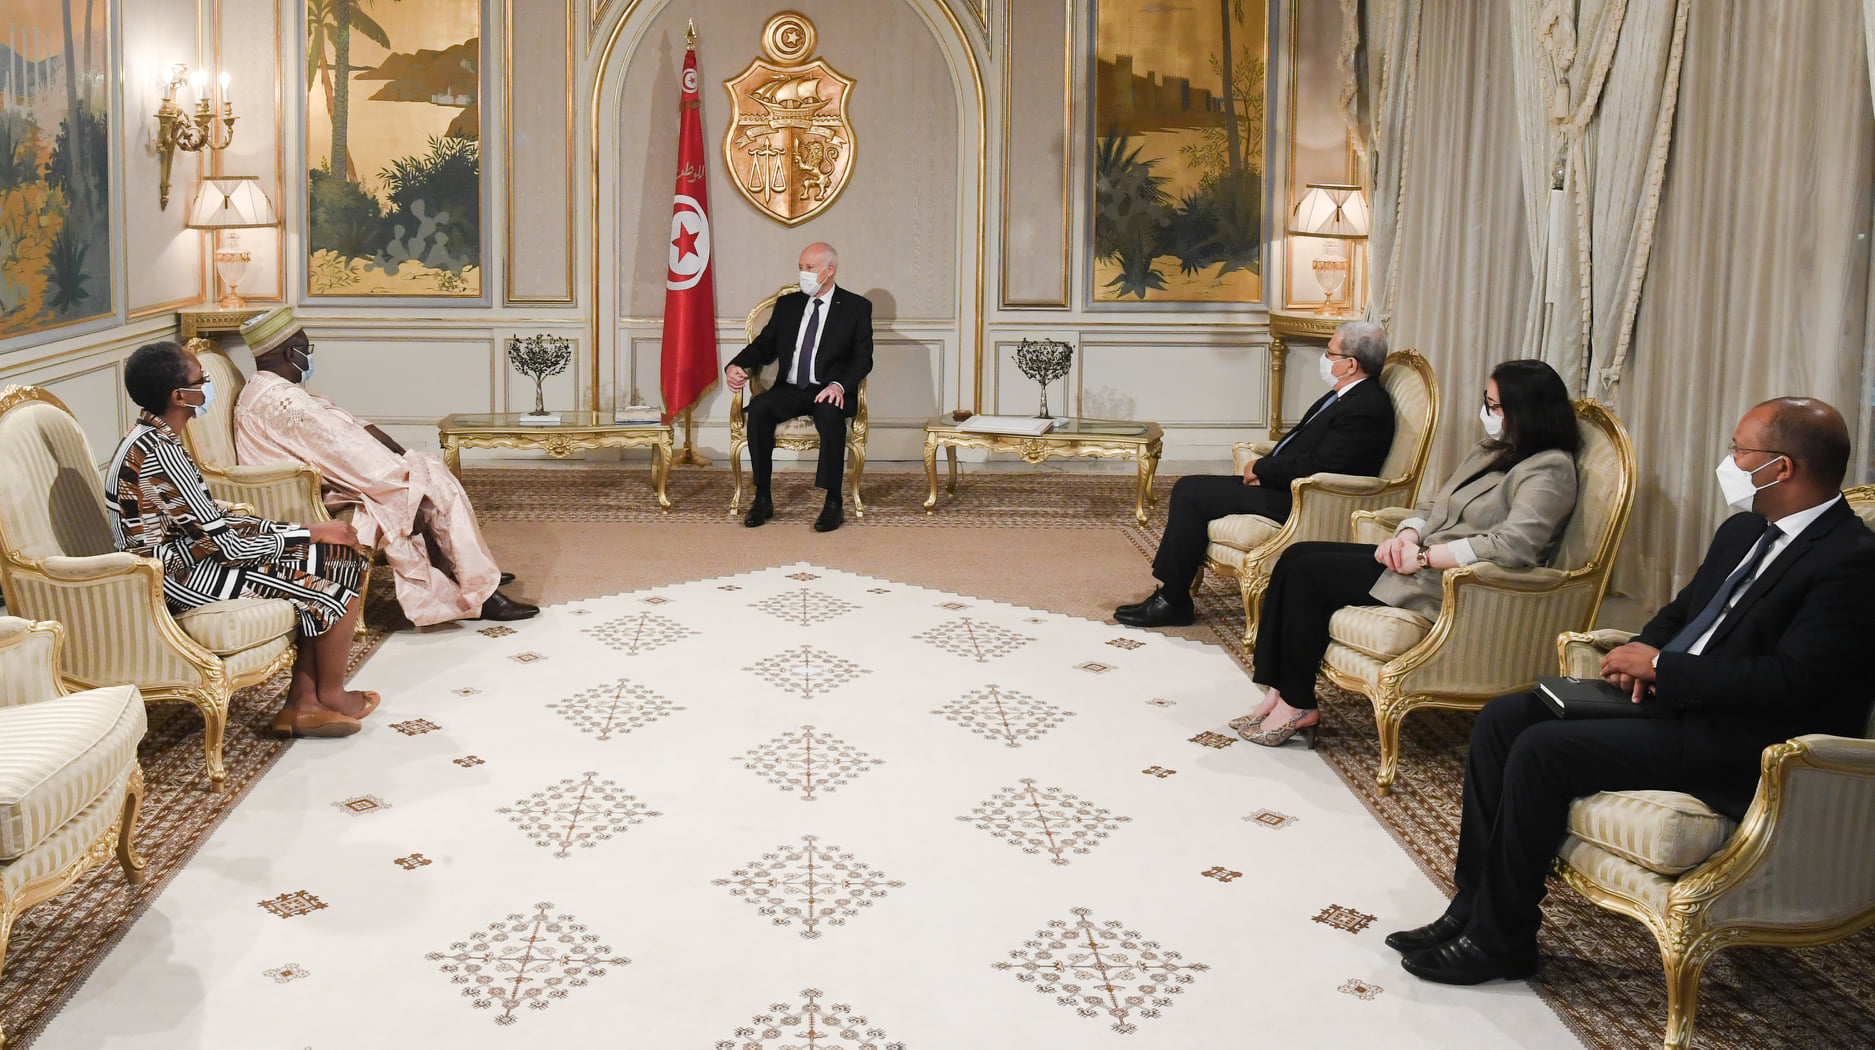 ‏رئيس الجمهورية‎ يتسلم أوراق اعتماد سفراء جدد بتونس لعدد من البلدان ‎‎‎‎